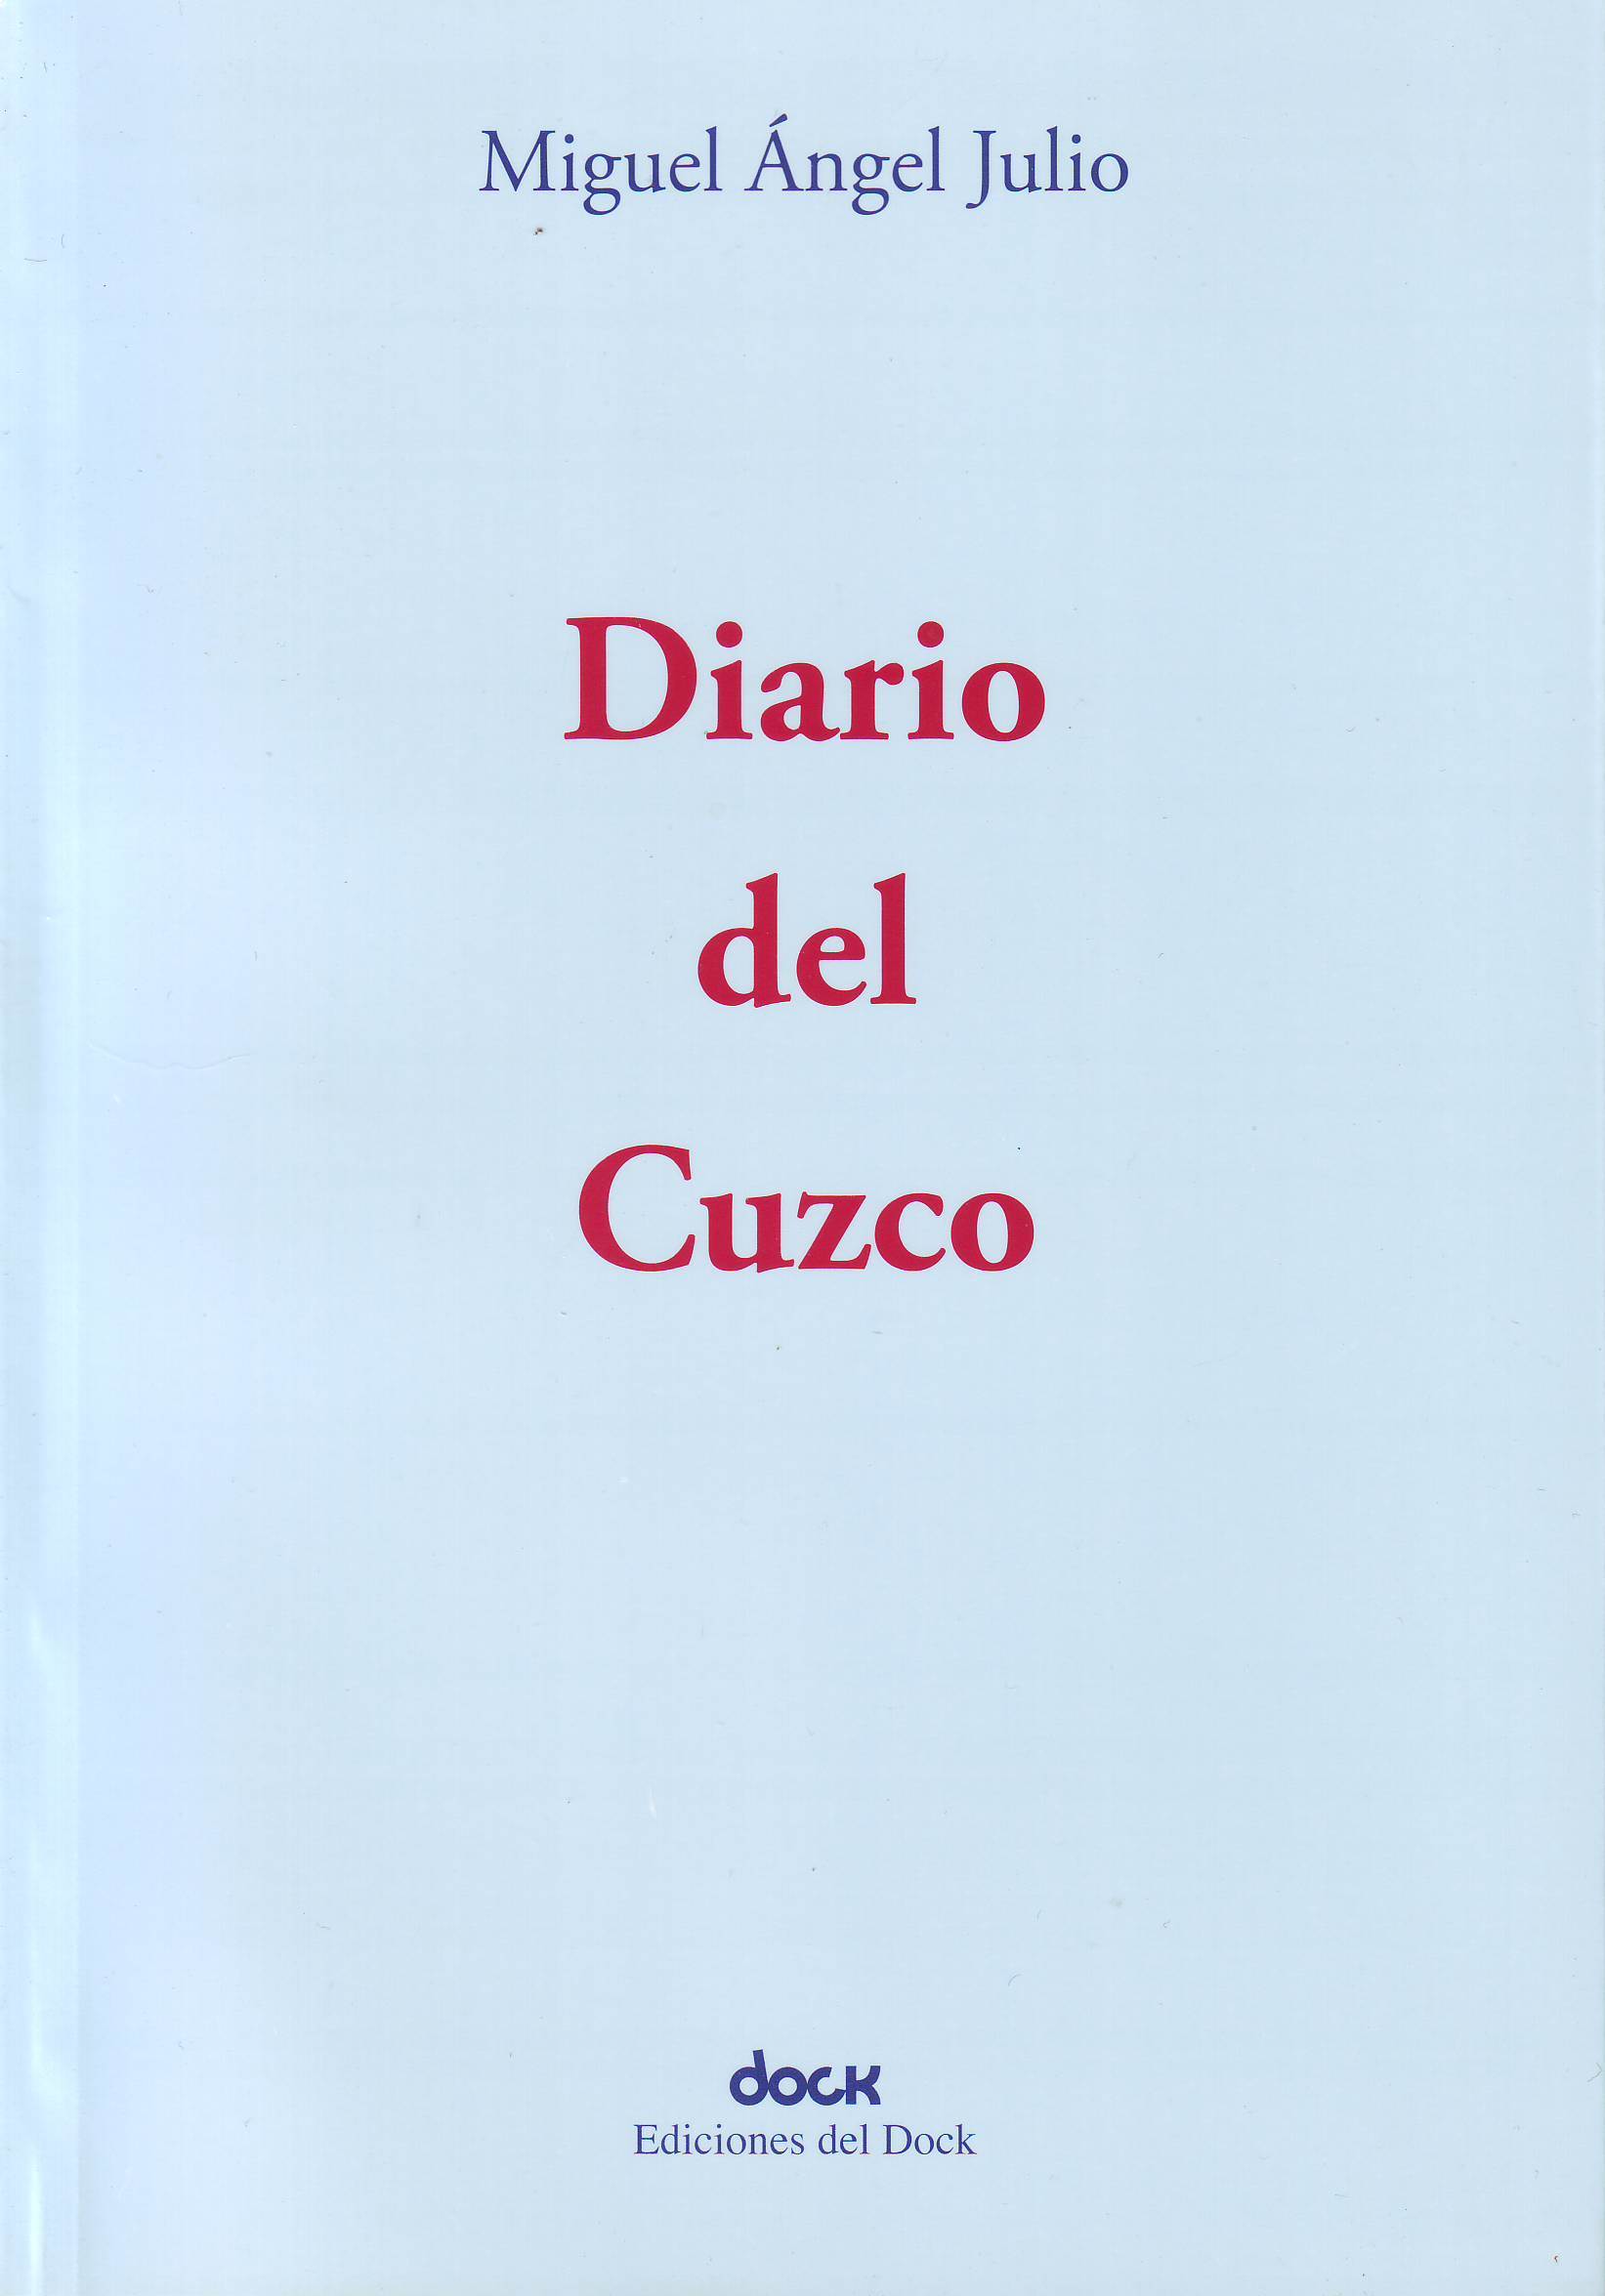 Diario del Cuzco